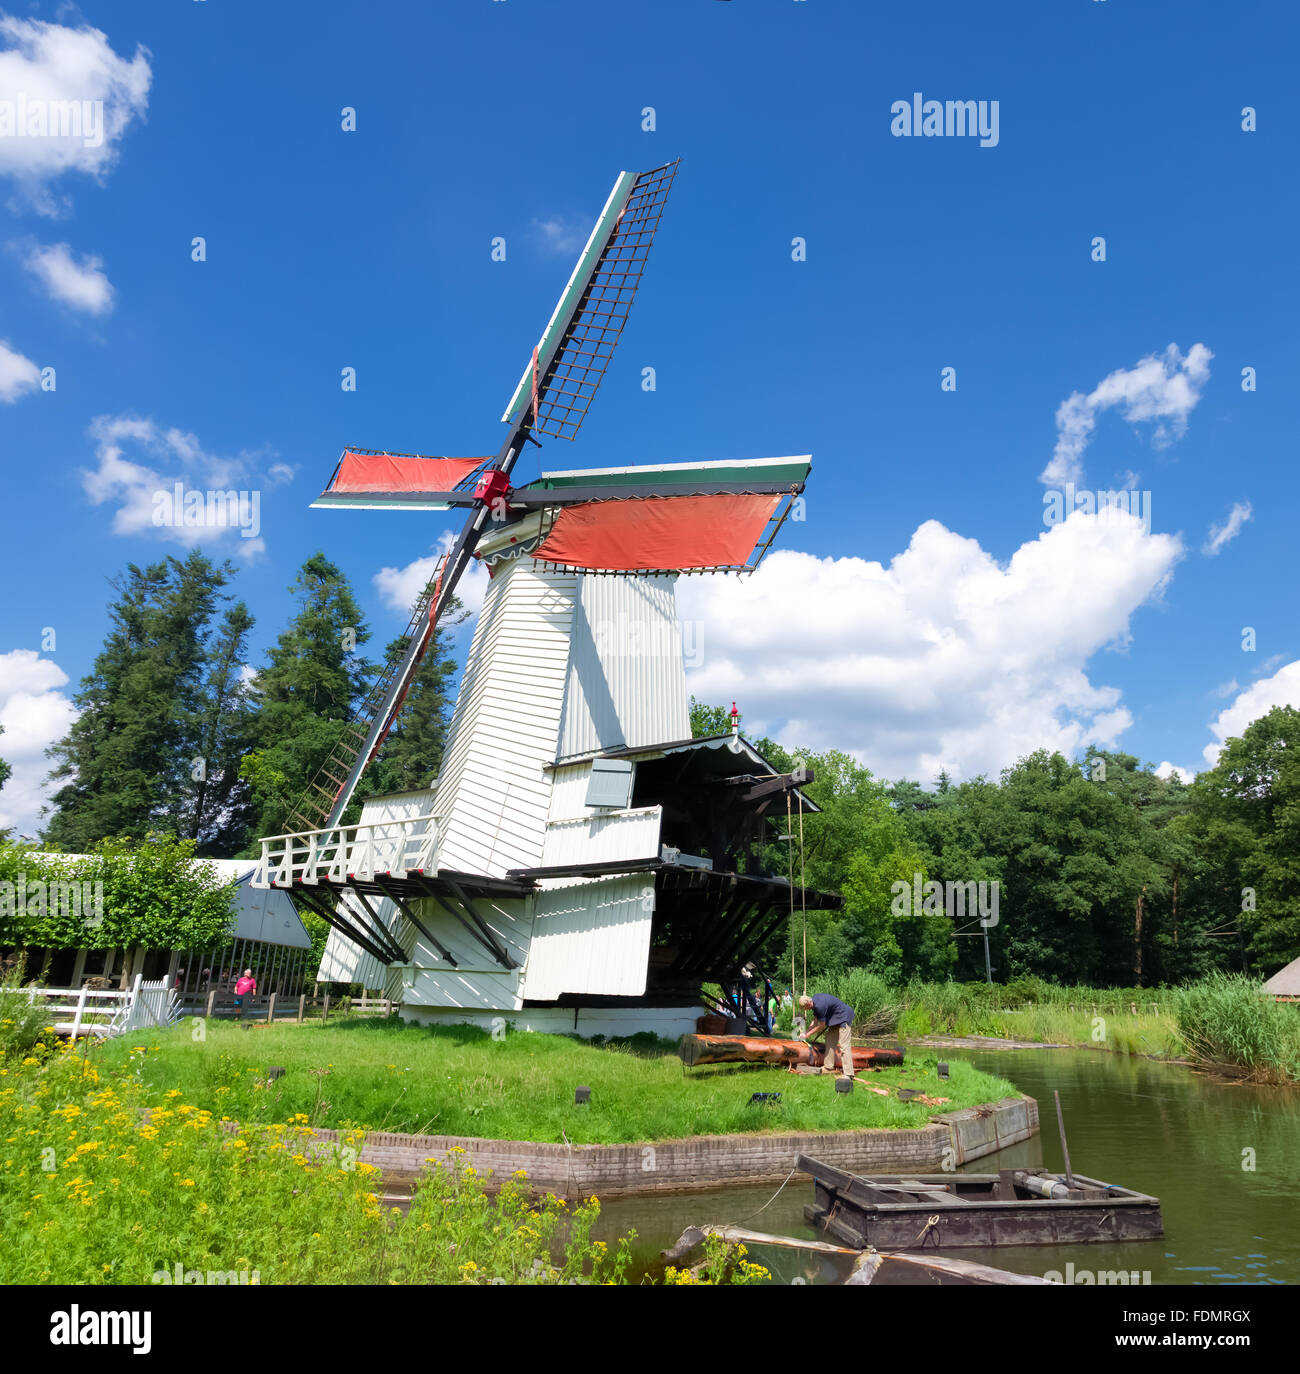 ARNHEM, Niederlande - 26. Juli 2015: Classic Windmühle in den Niederlanden Open-Air-Museum. Das Museum zeigt der niederländischen Geschichte her Stockfoto